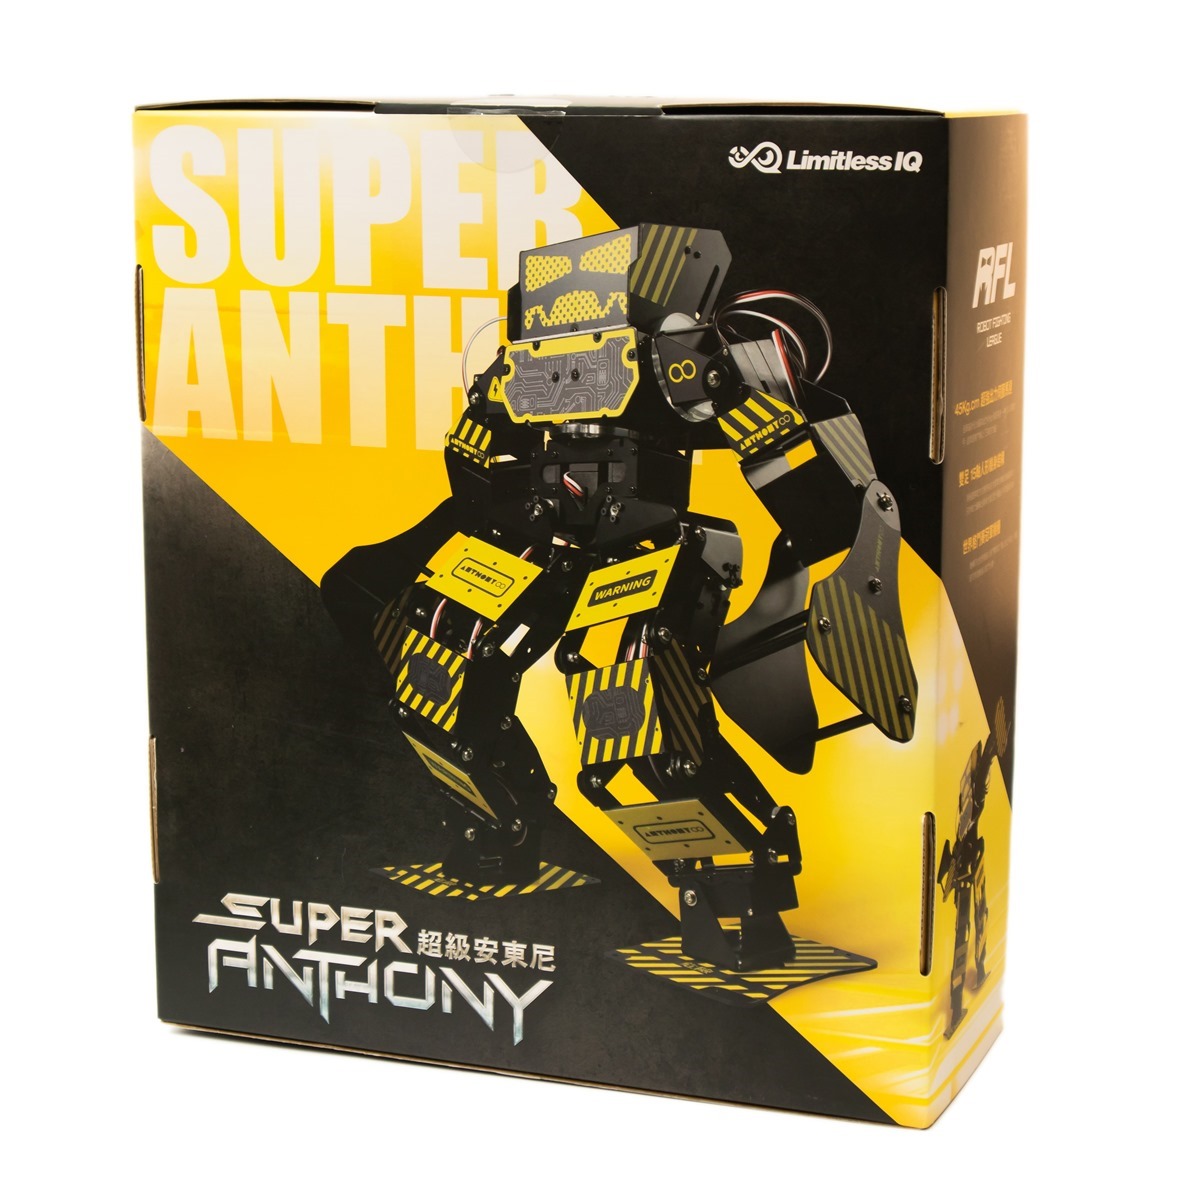 一圓大男孩的兒時夢！超級安東尼 Super Anthony 格鬥機器人開箱動手玩 @3C 達人廖阿輝